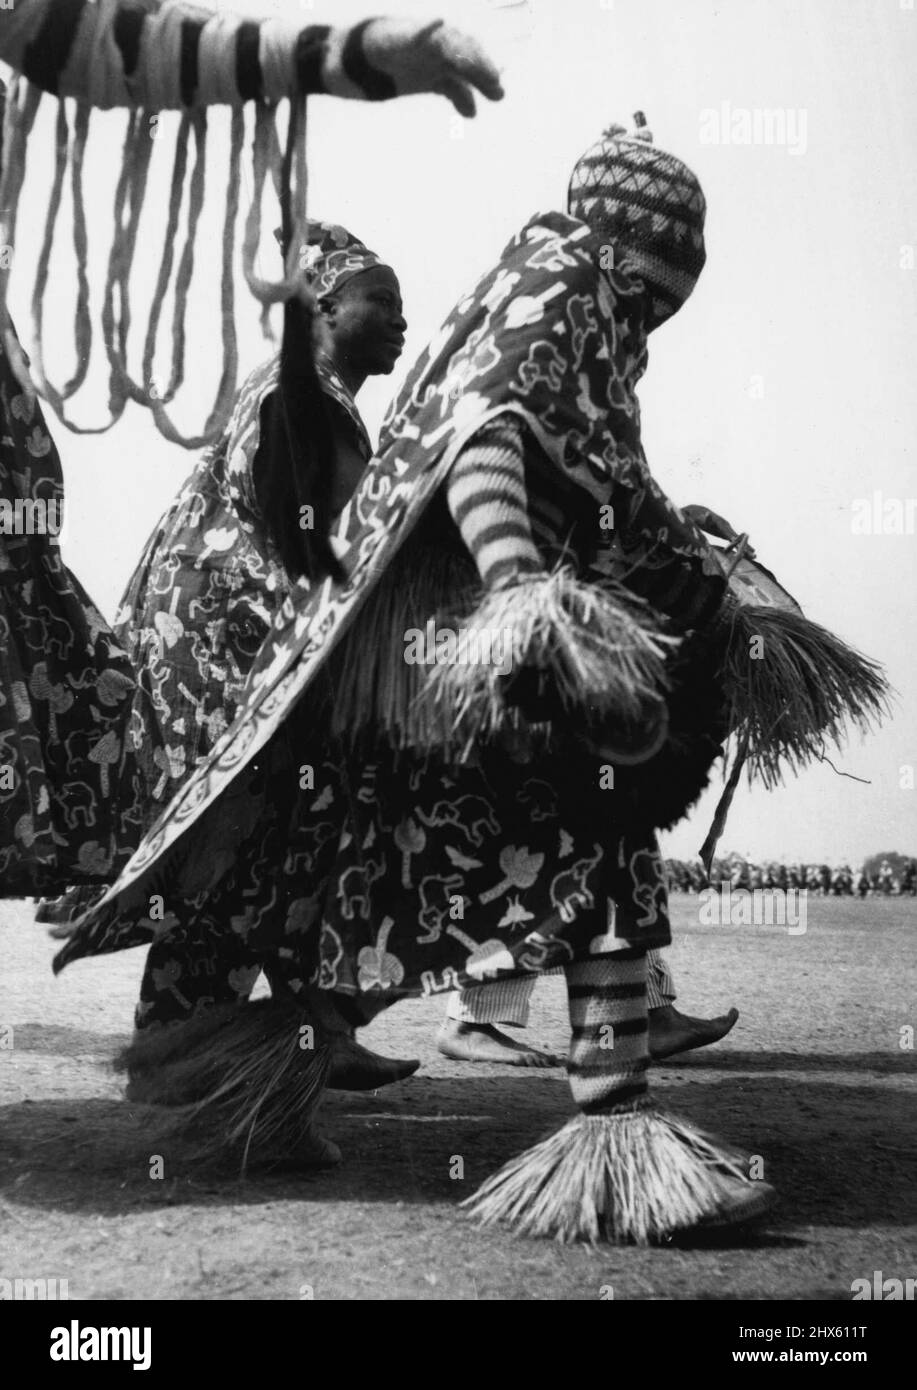 Sein Kopf war vollständig bedeckt und in einem farbenfrohen, mit Stroh getrimmten Kleid gekleidet. Dieser ian-Stammesmann gehörte zu den 7.000, die am Donnerstag (2-2-56) vor der Königin bei der Kaduna-Kundgebung vormarschierten. 17. Februar 1955. (Foto von Daily Mirror).;sein Kopf war vollständig bedeckt und in einem farbenfrohen, mit Stroh getrimmten Kleid gekleidet.dieser ian-Stammesmann gehörte zu den 7.000, die am Donnerstag (2-2-56) bei der Kaduna-Kundgebung vor der Königin vormarschierten. Stockfoto